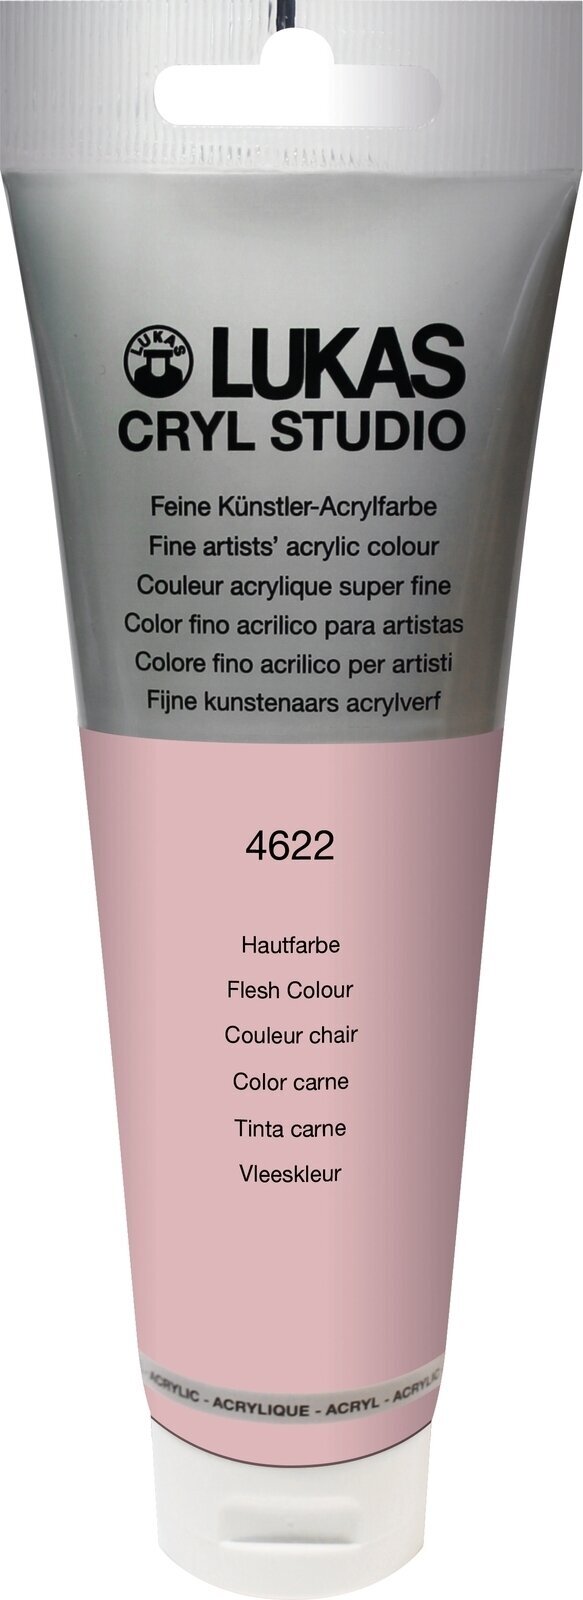 Tinta acrílica Lukas Cryl Studio Tinta acrílica 125 ml Peach Pink